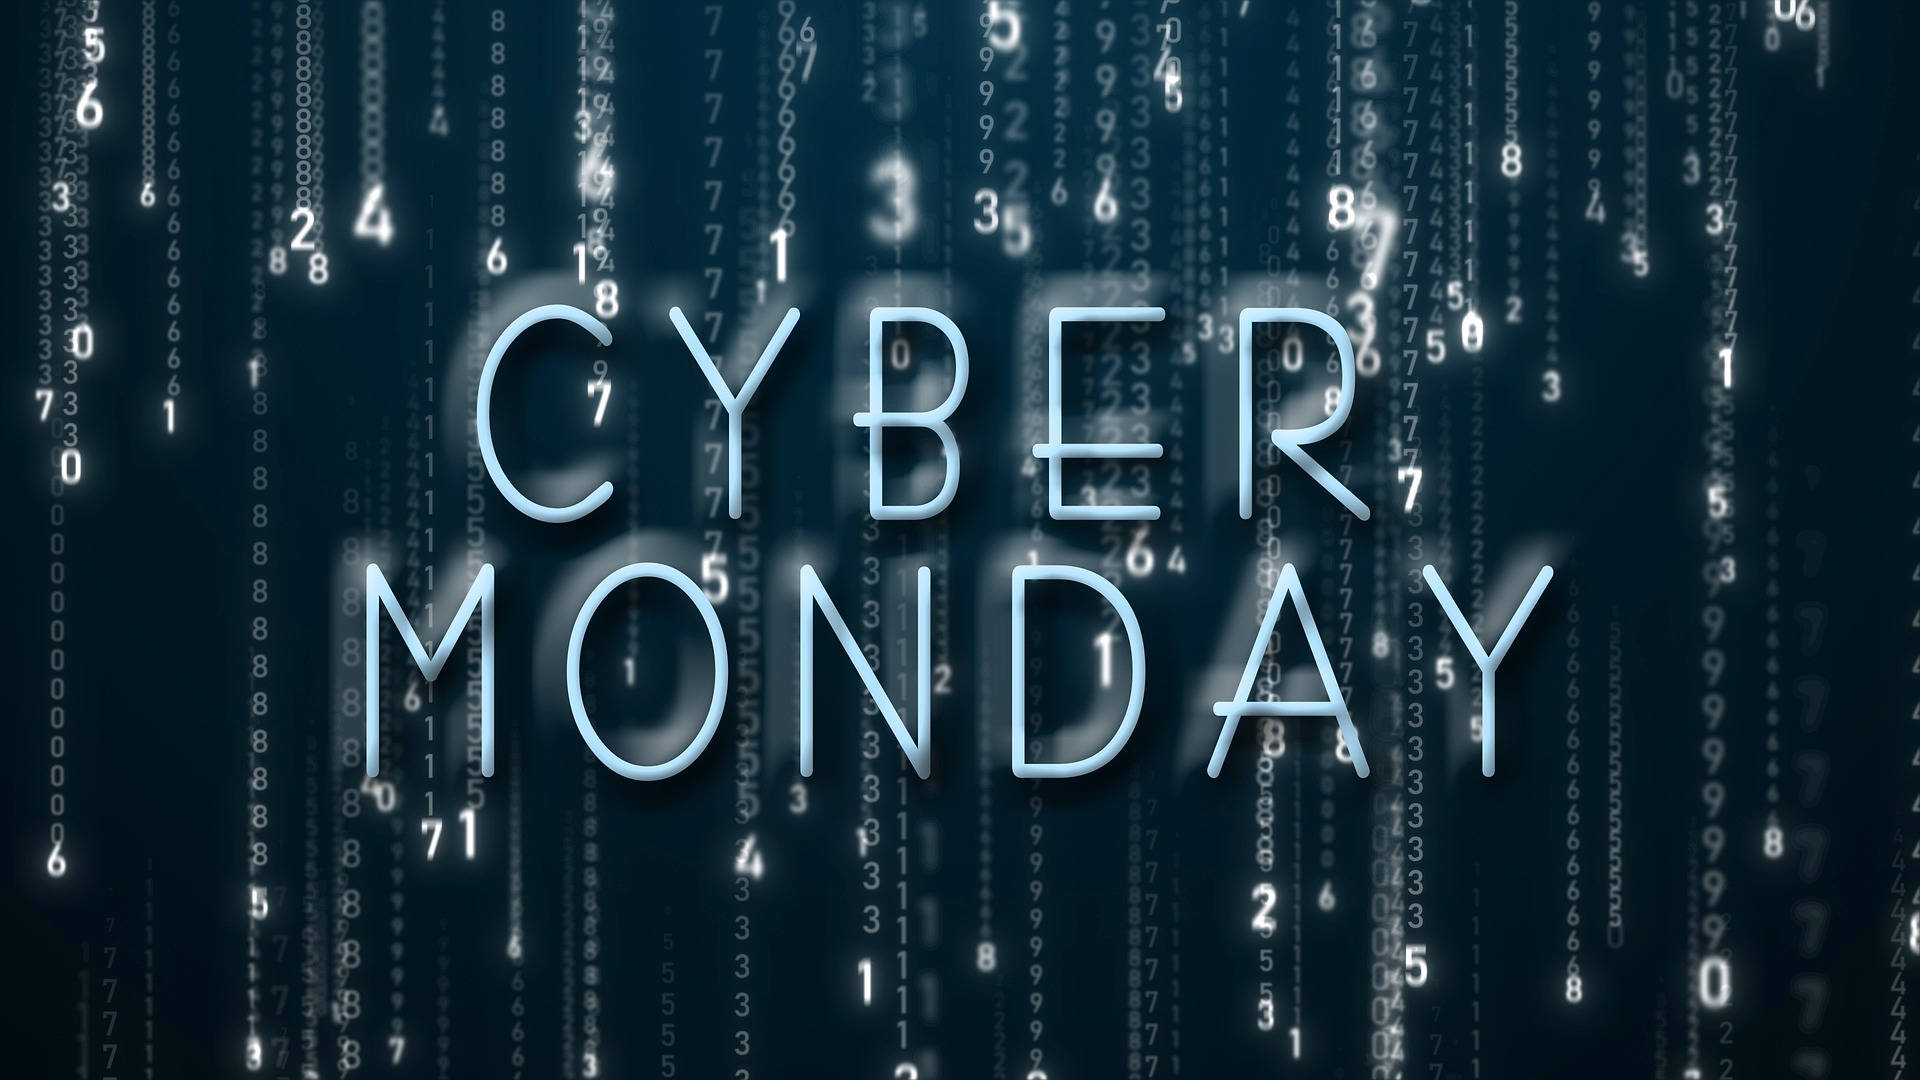 Cyber Monday Stylish Digital Signage Background